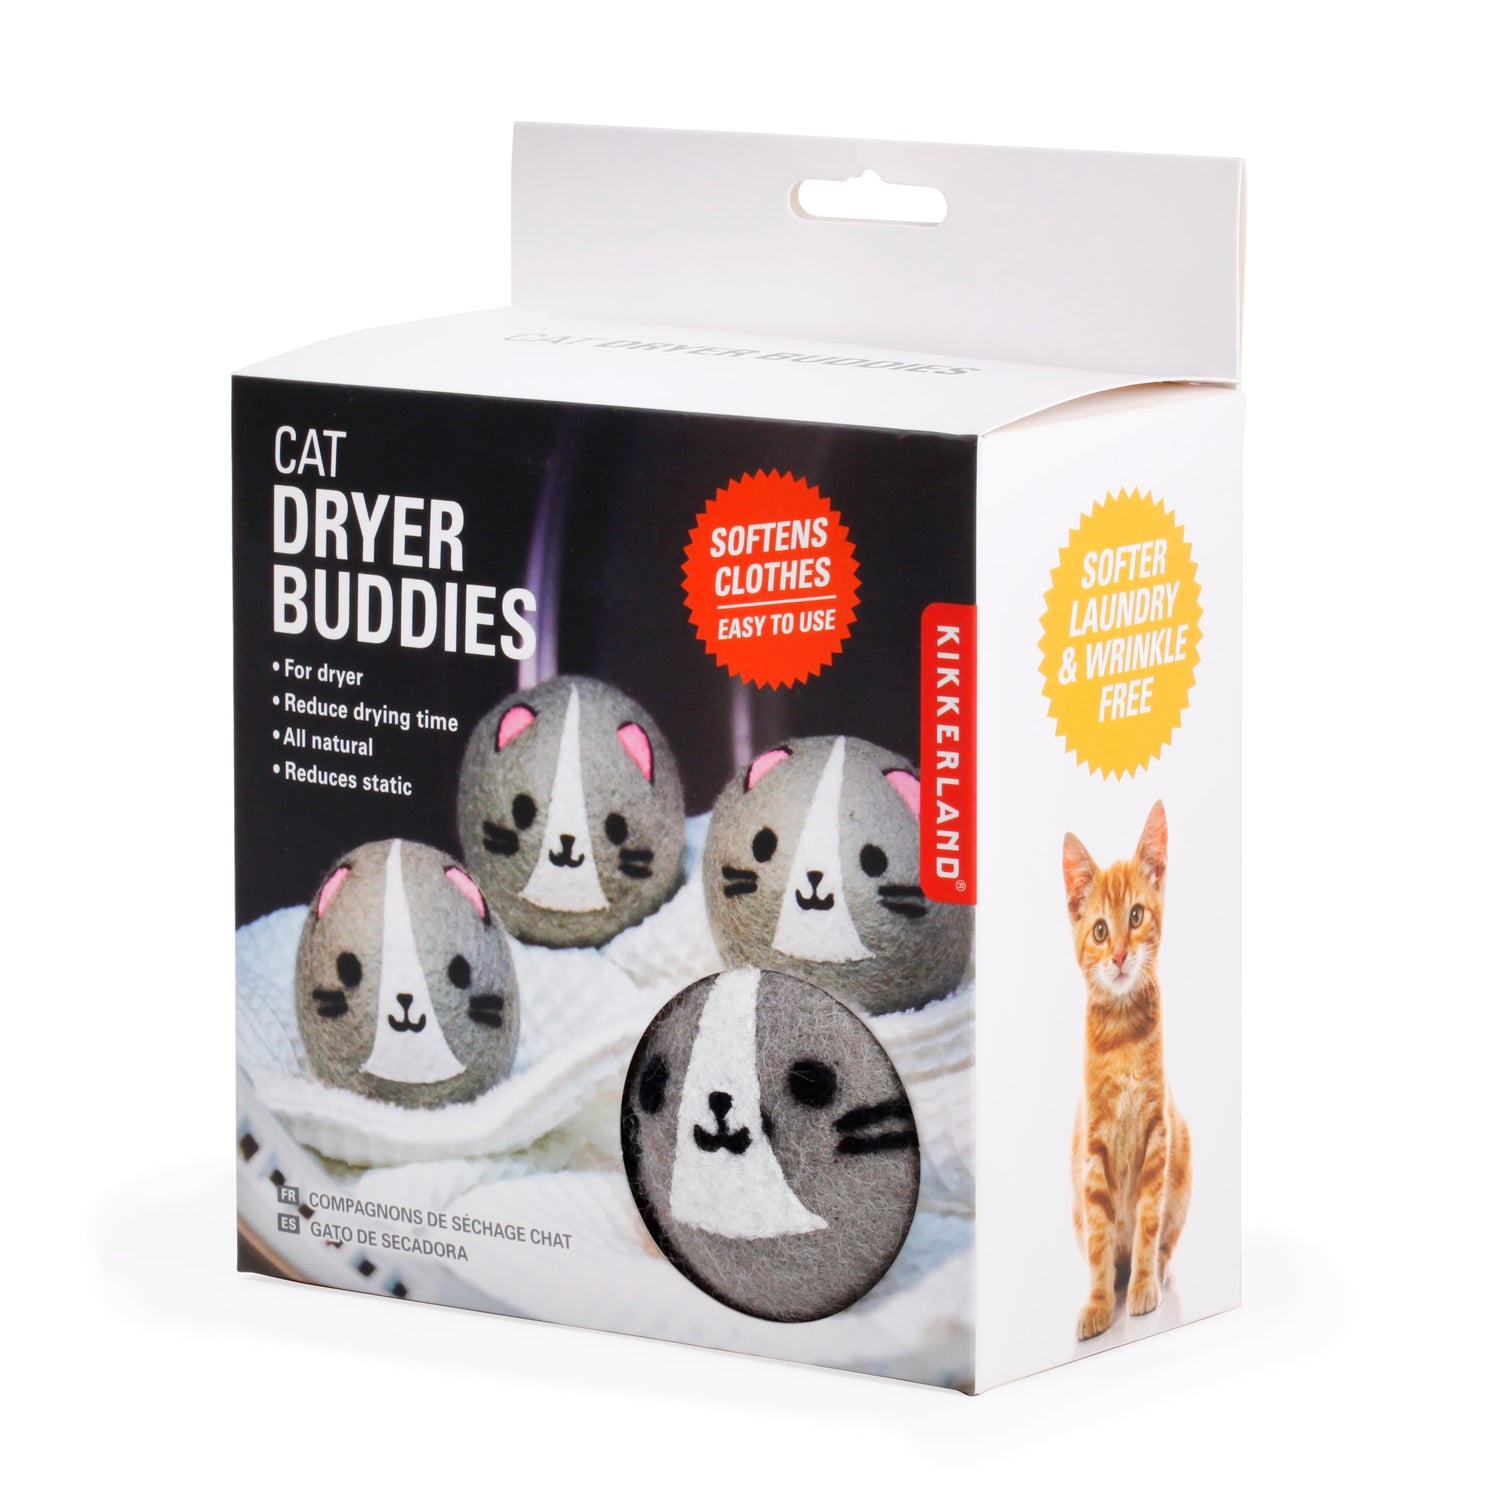 Cat Dryer Buddies